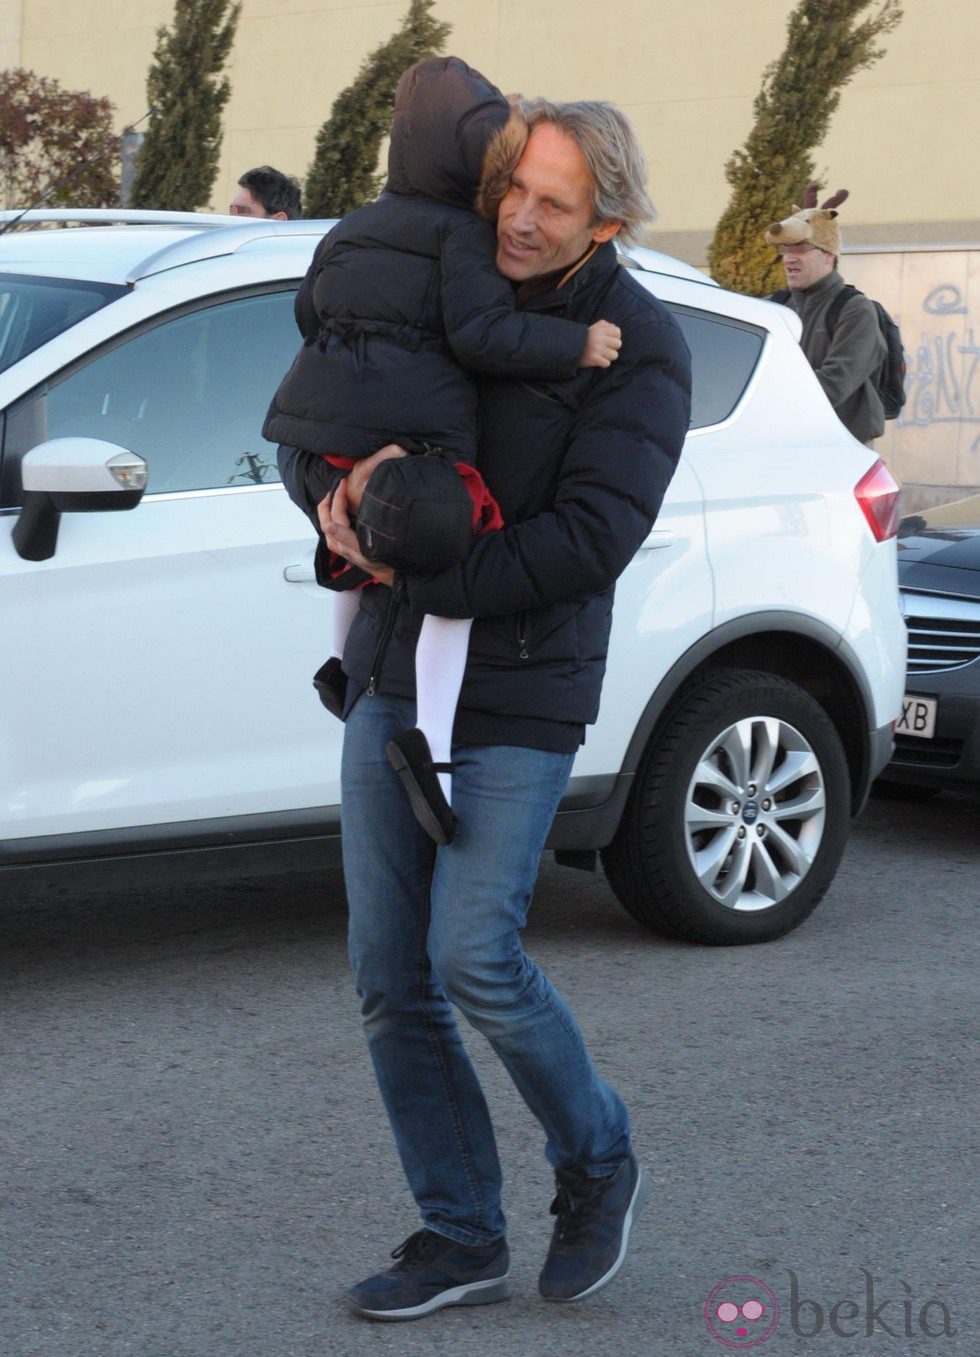 Marco Vricella lleva a su hija Laura a la función escolar navideña